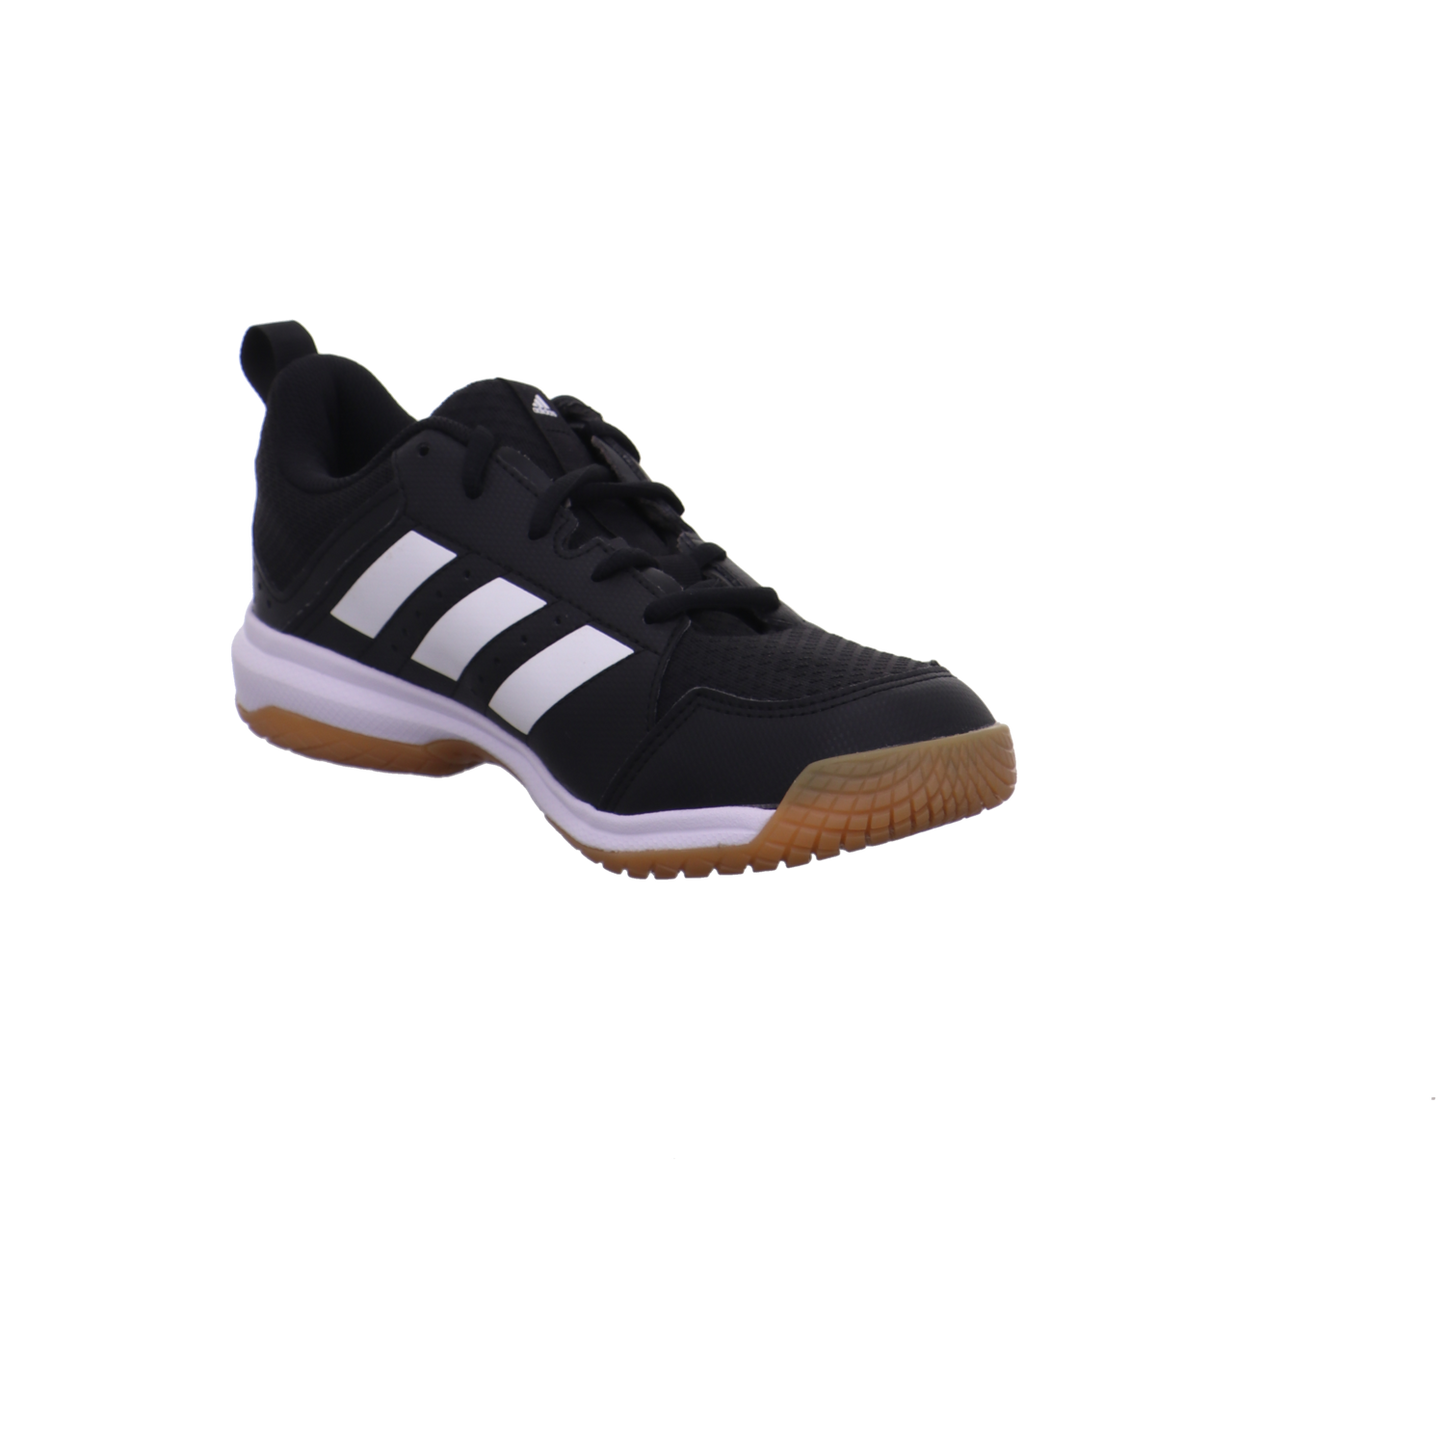 Adidas Training und Hallenschuhe schwarz-weiß Bild7